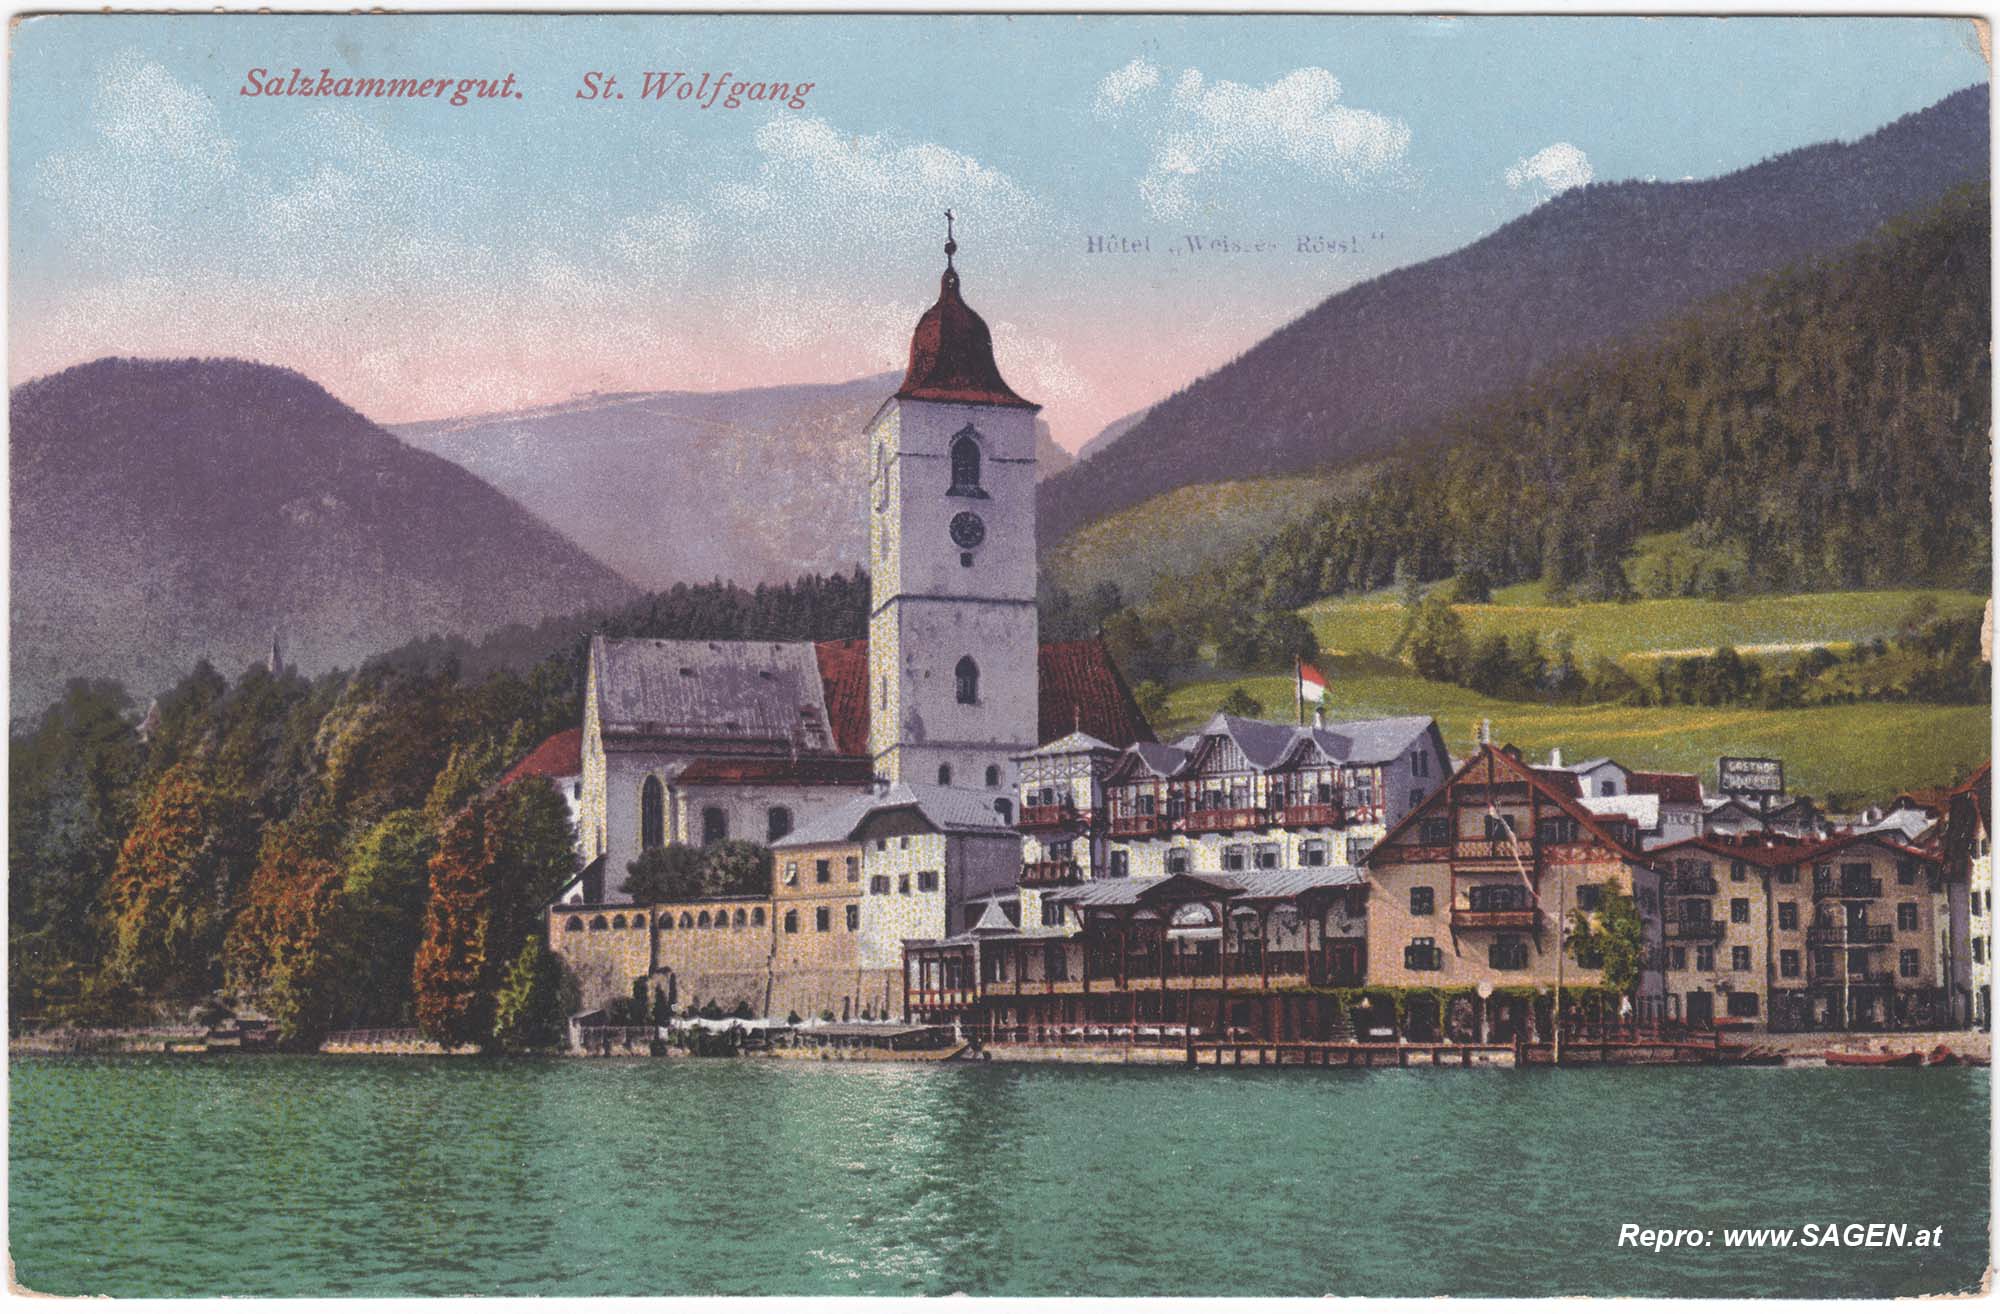 Salzkammergut. St. Wolfgang